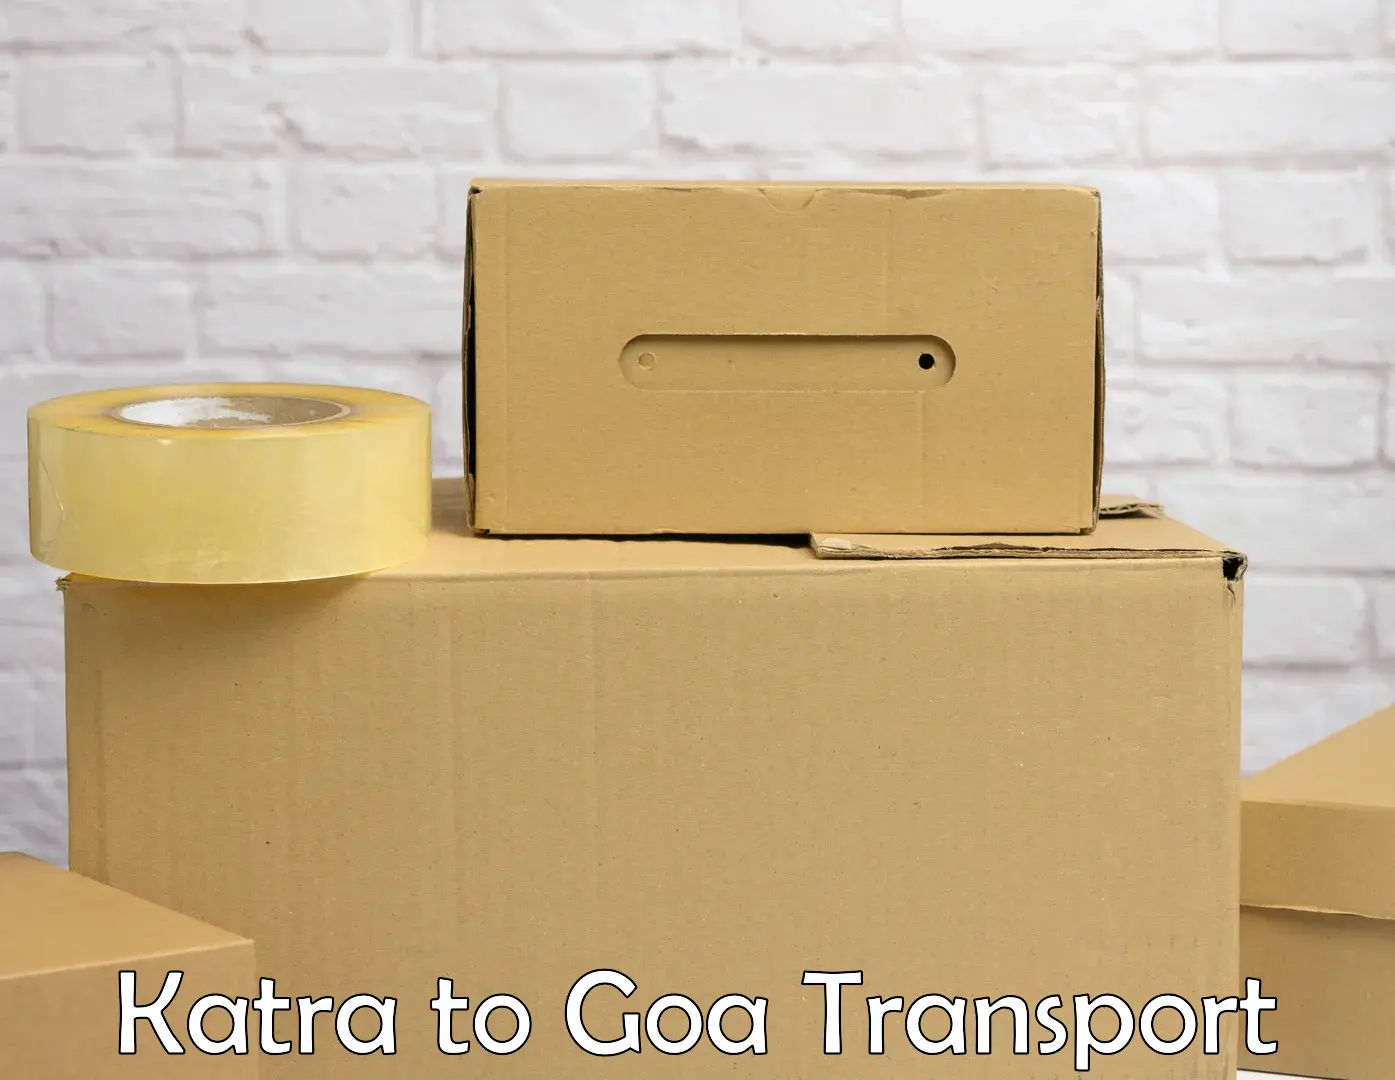 Nearest transport service Katra to Vasco da Gama